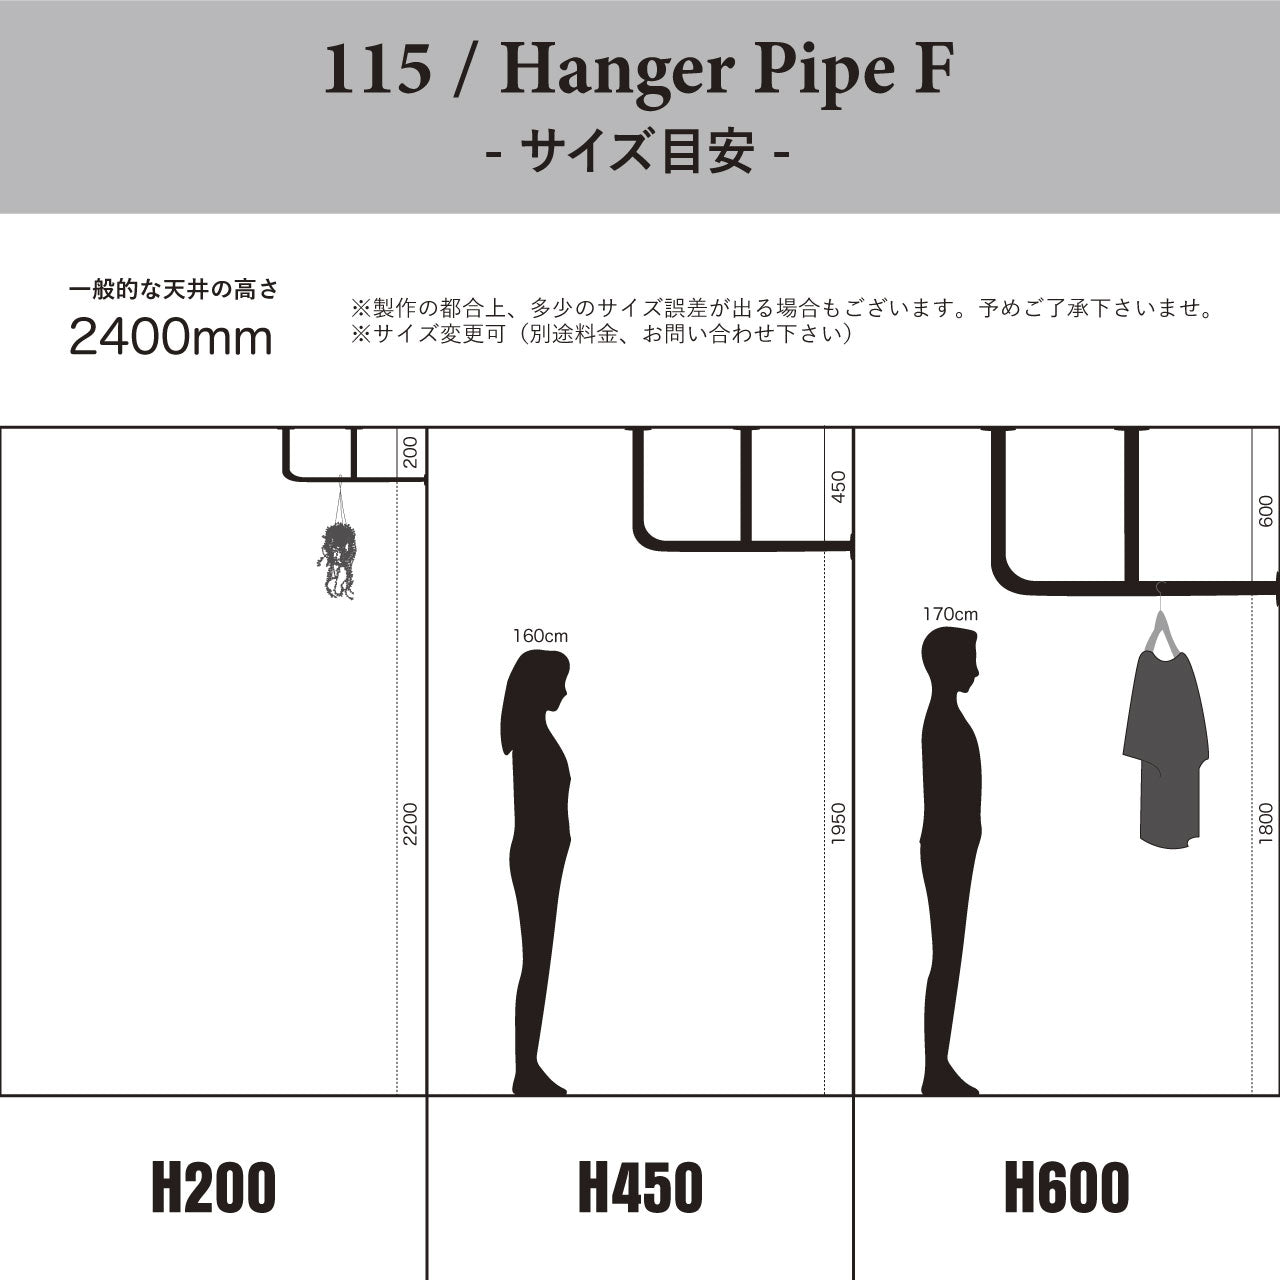 Hanger Pipe F